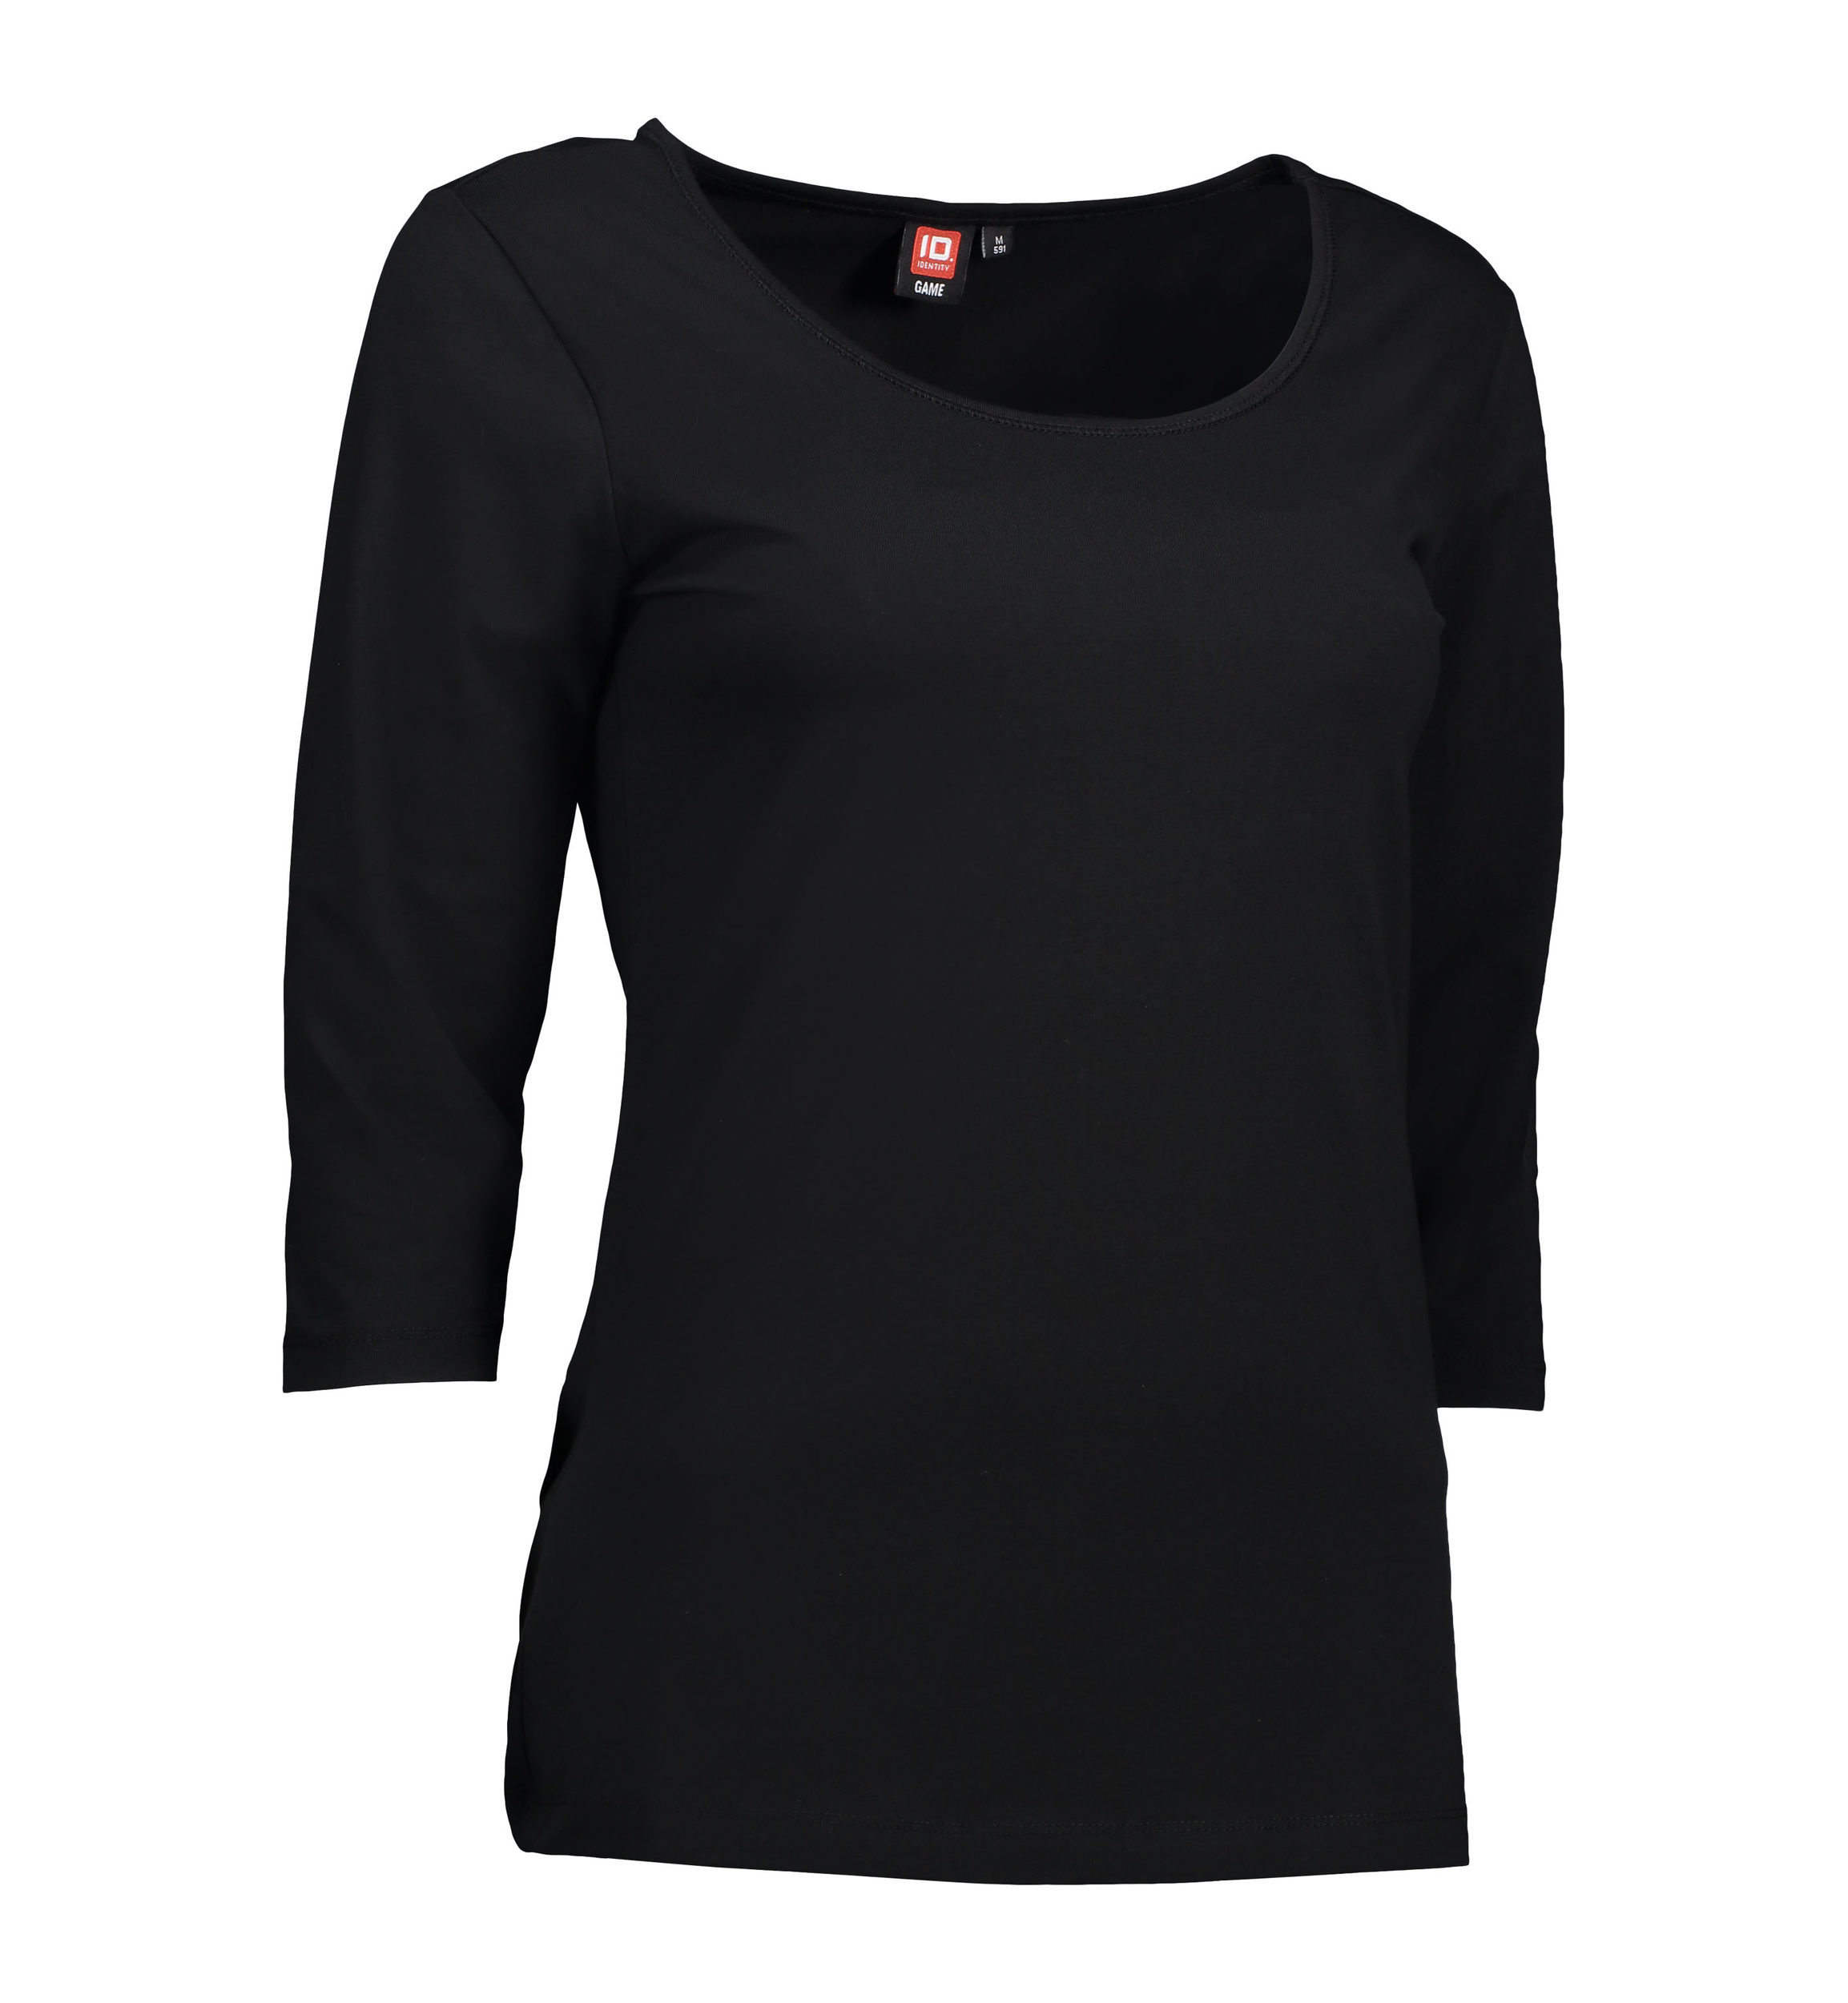 Se 3/4-ærmet dame t-shirt i sort - S hos Sygeplejebutikken.dk